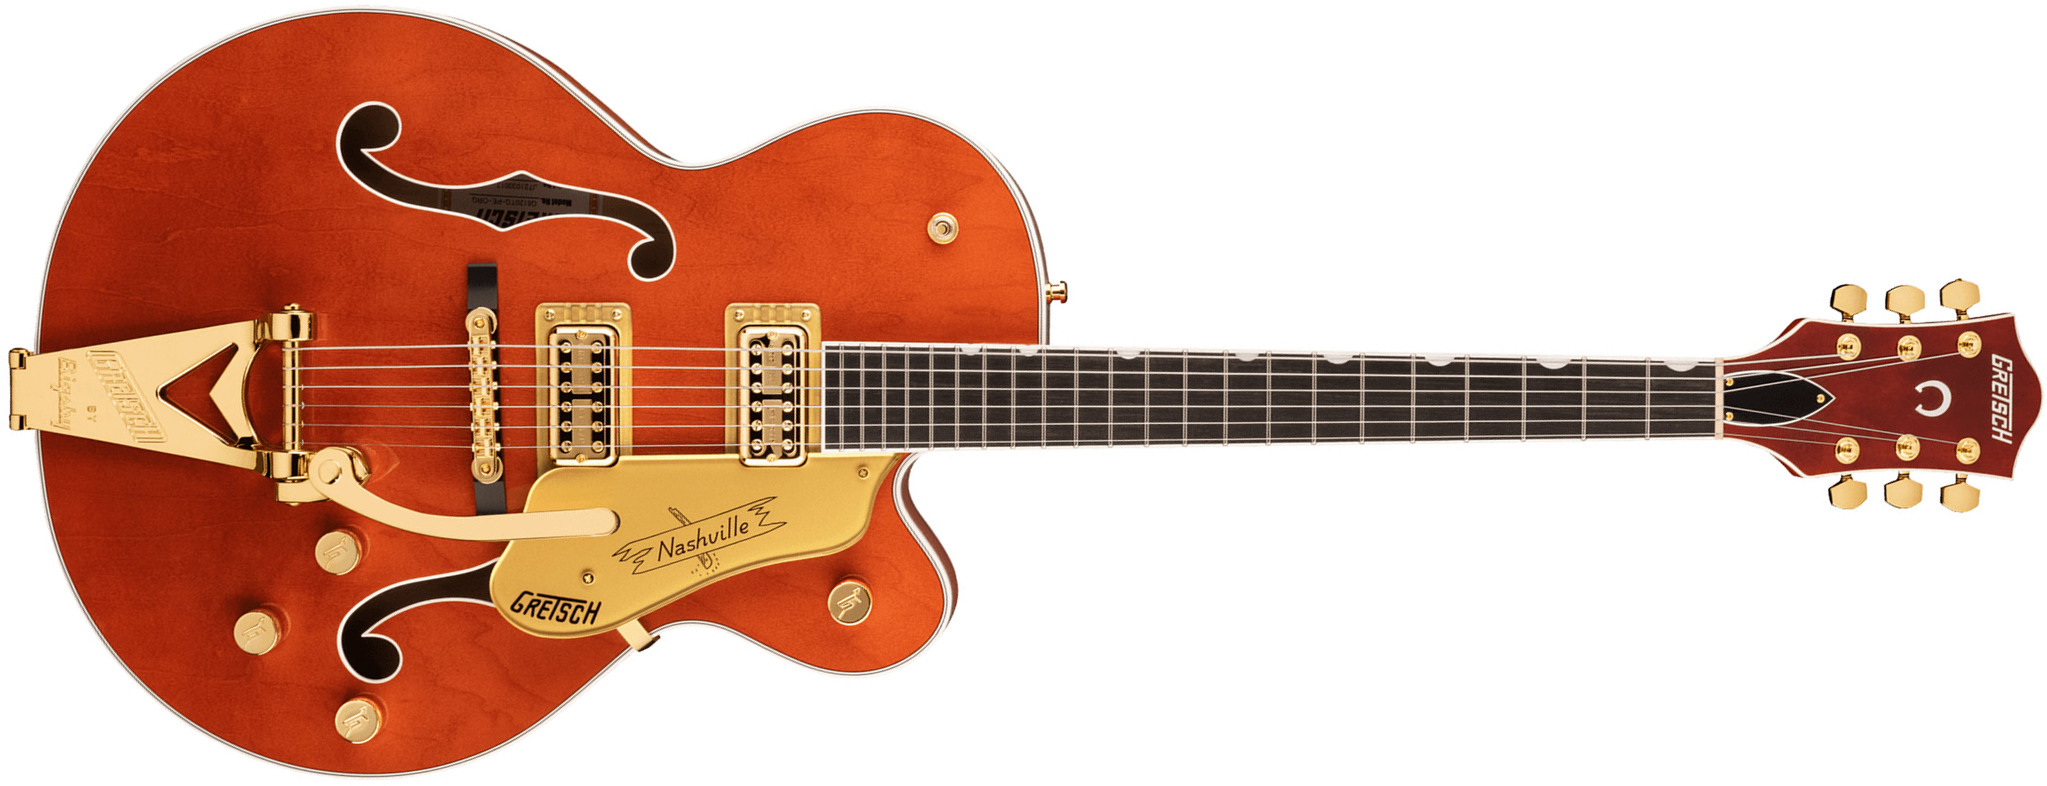 Gretsch G6120tg Players Edition Nashville Pro Jap Bigsby Eb - Orange Stain - Guitarra elécrica Jazz cuerpo acústico - Main picture